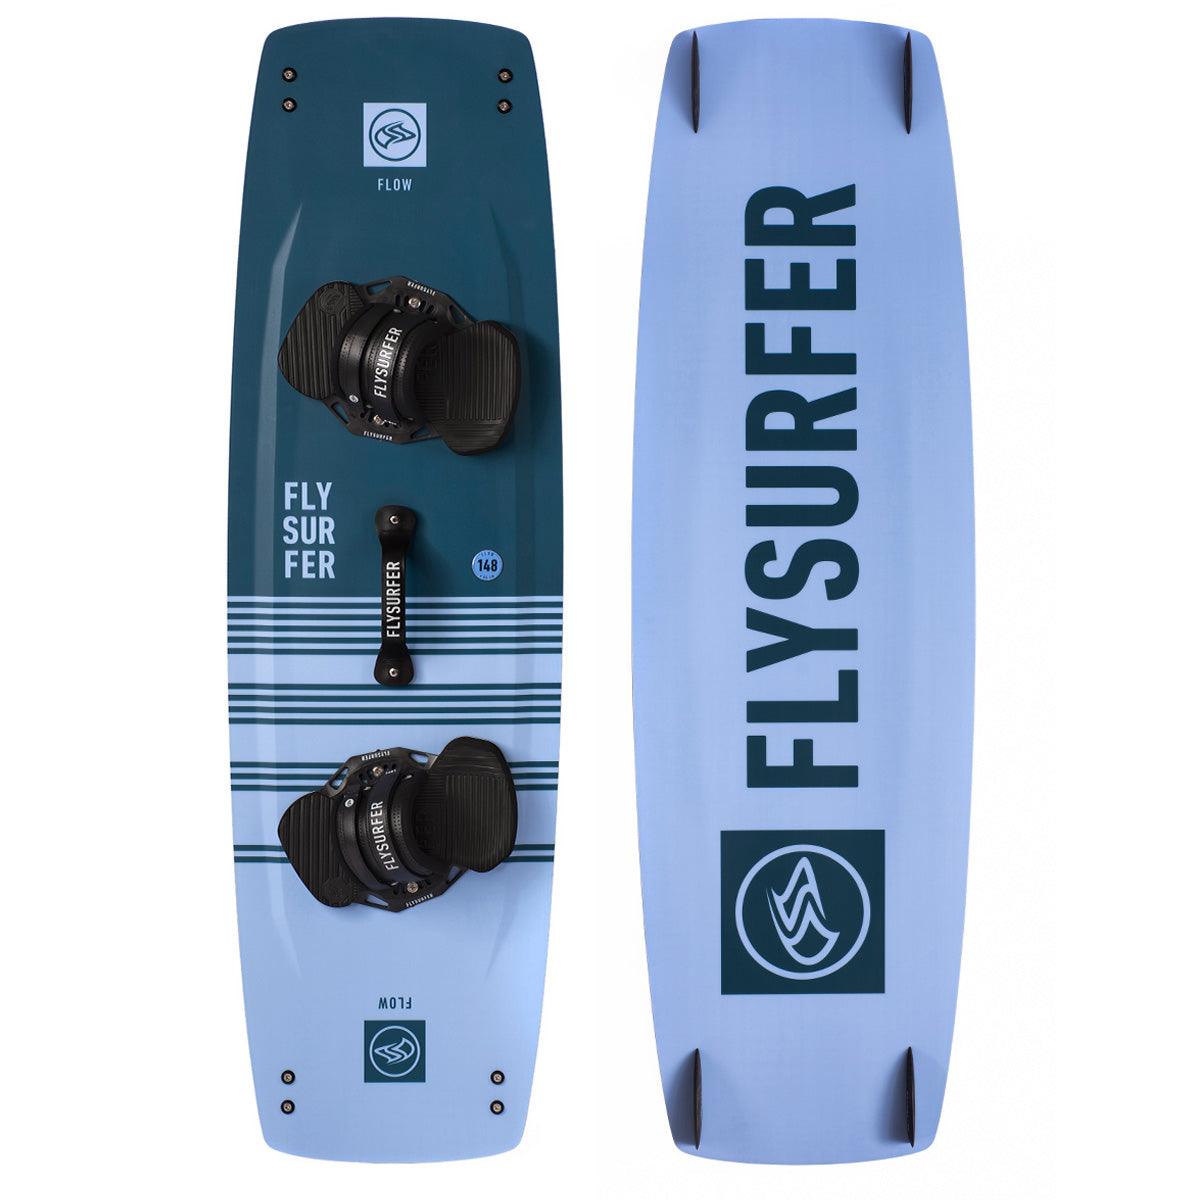 Flysurfer Flow - Kiteshop.com